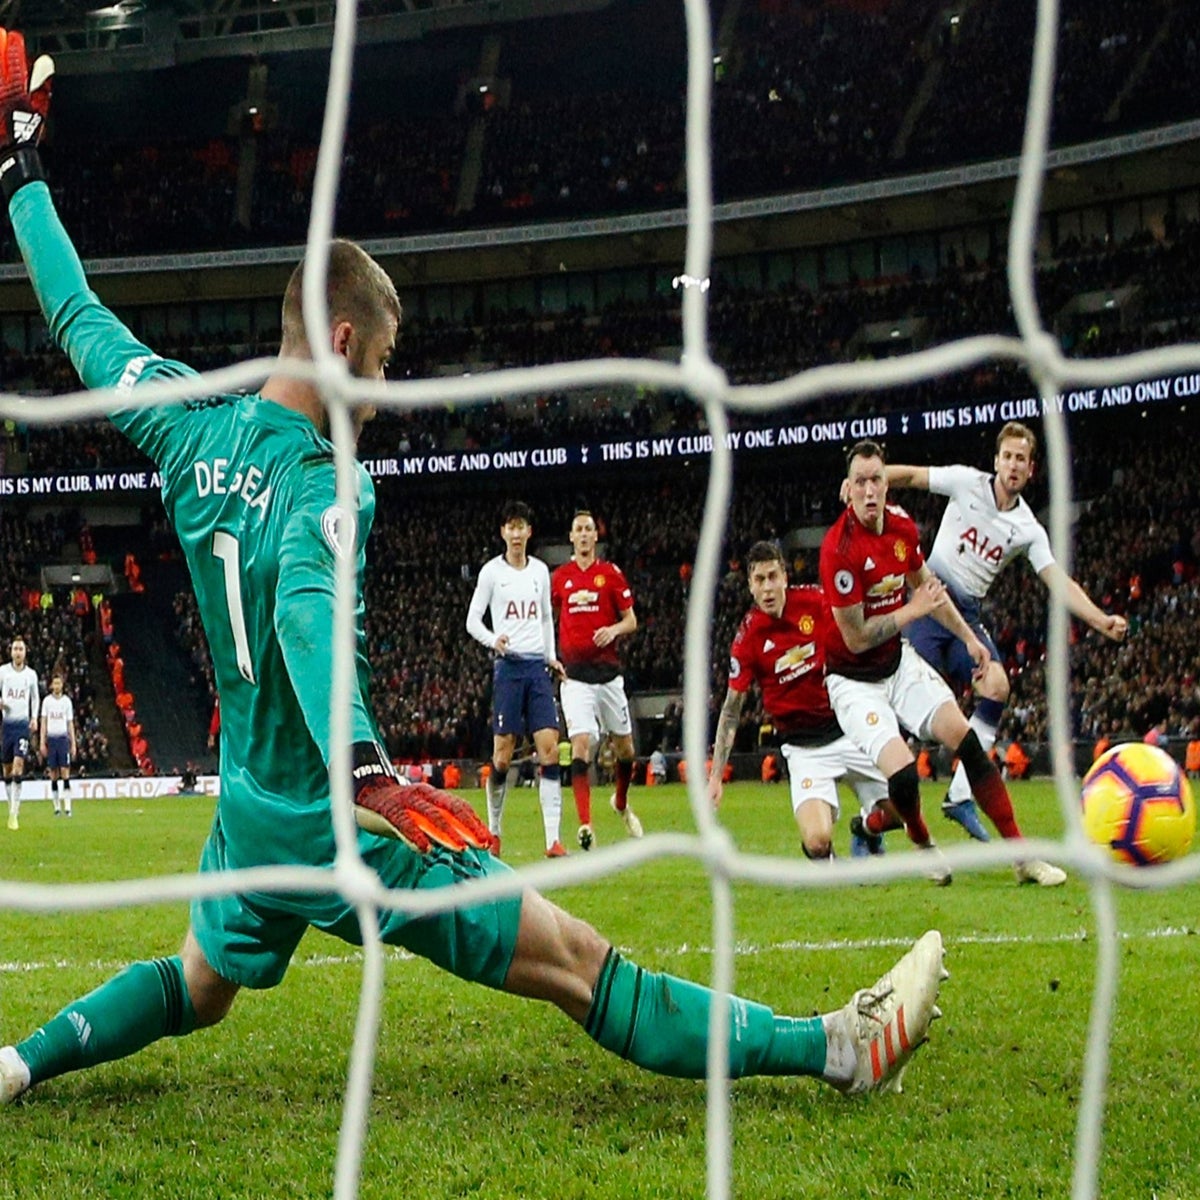 Premier League - Manchester United: De gea's 11 saves at wembley